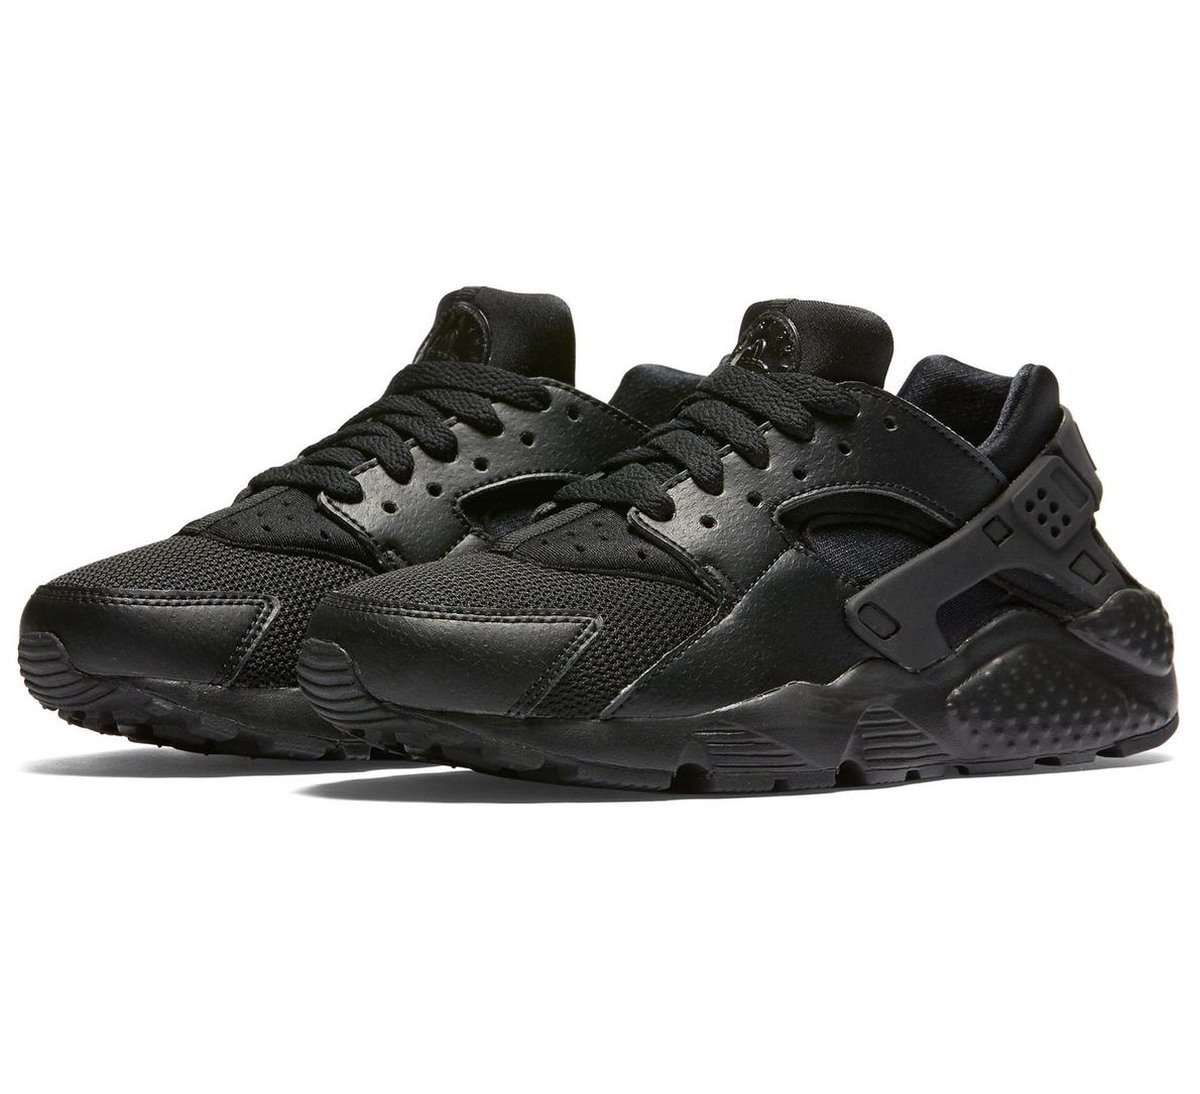 voorkomen mond kapsel Nike Huarache Run (GS) Sportschoenen - Maat 38.5 - Unisex - zwart | bol.com